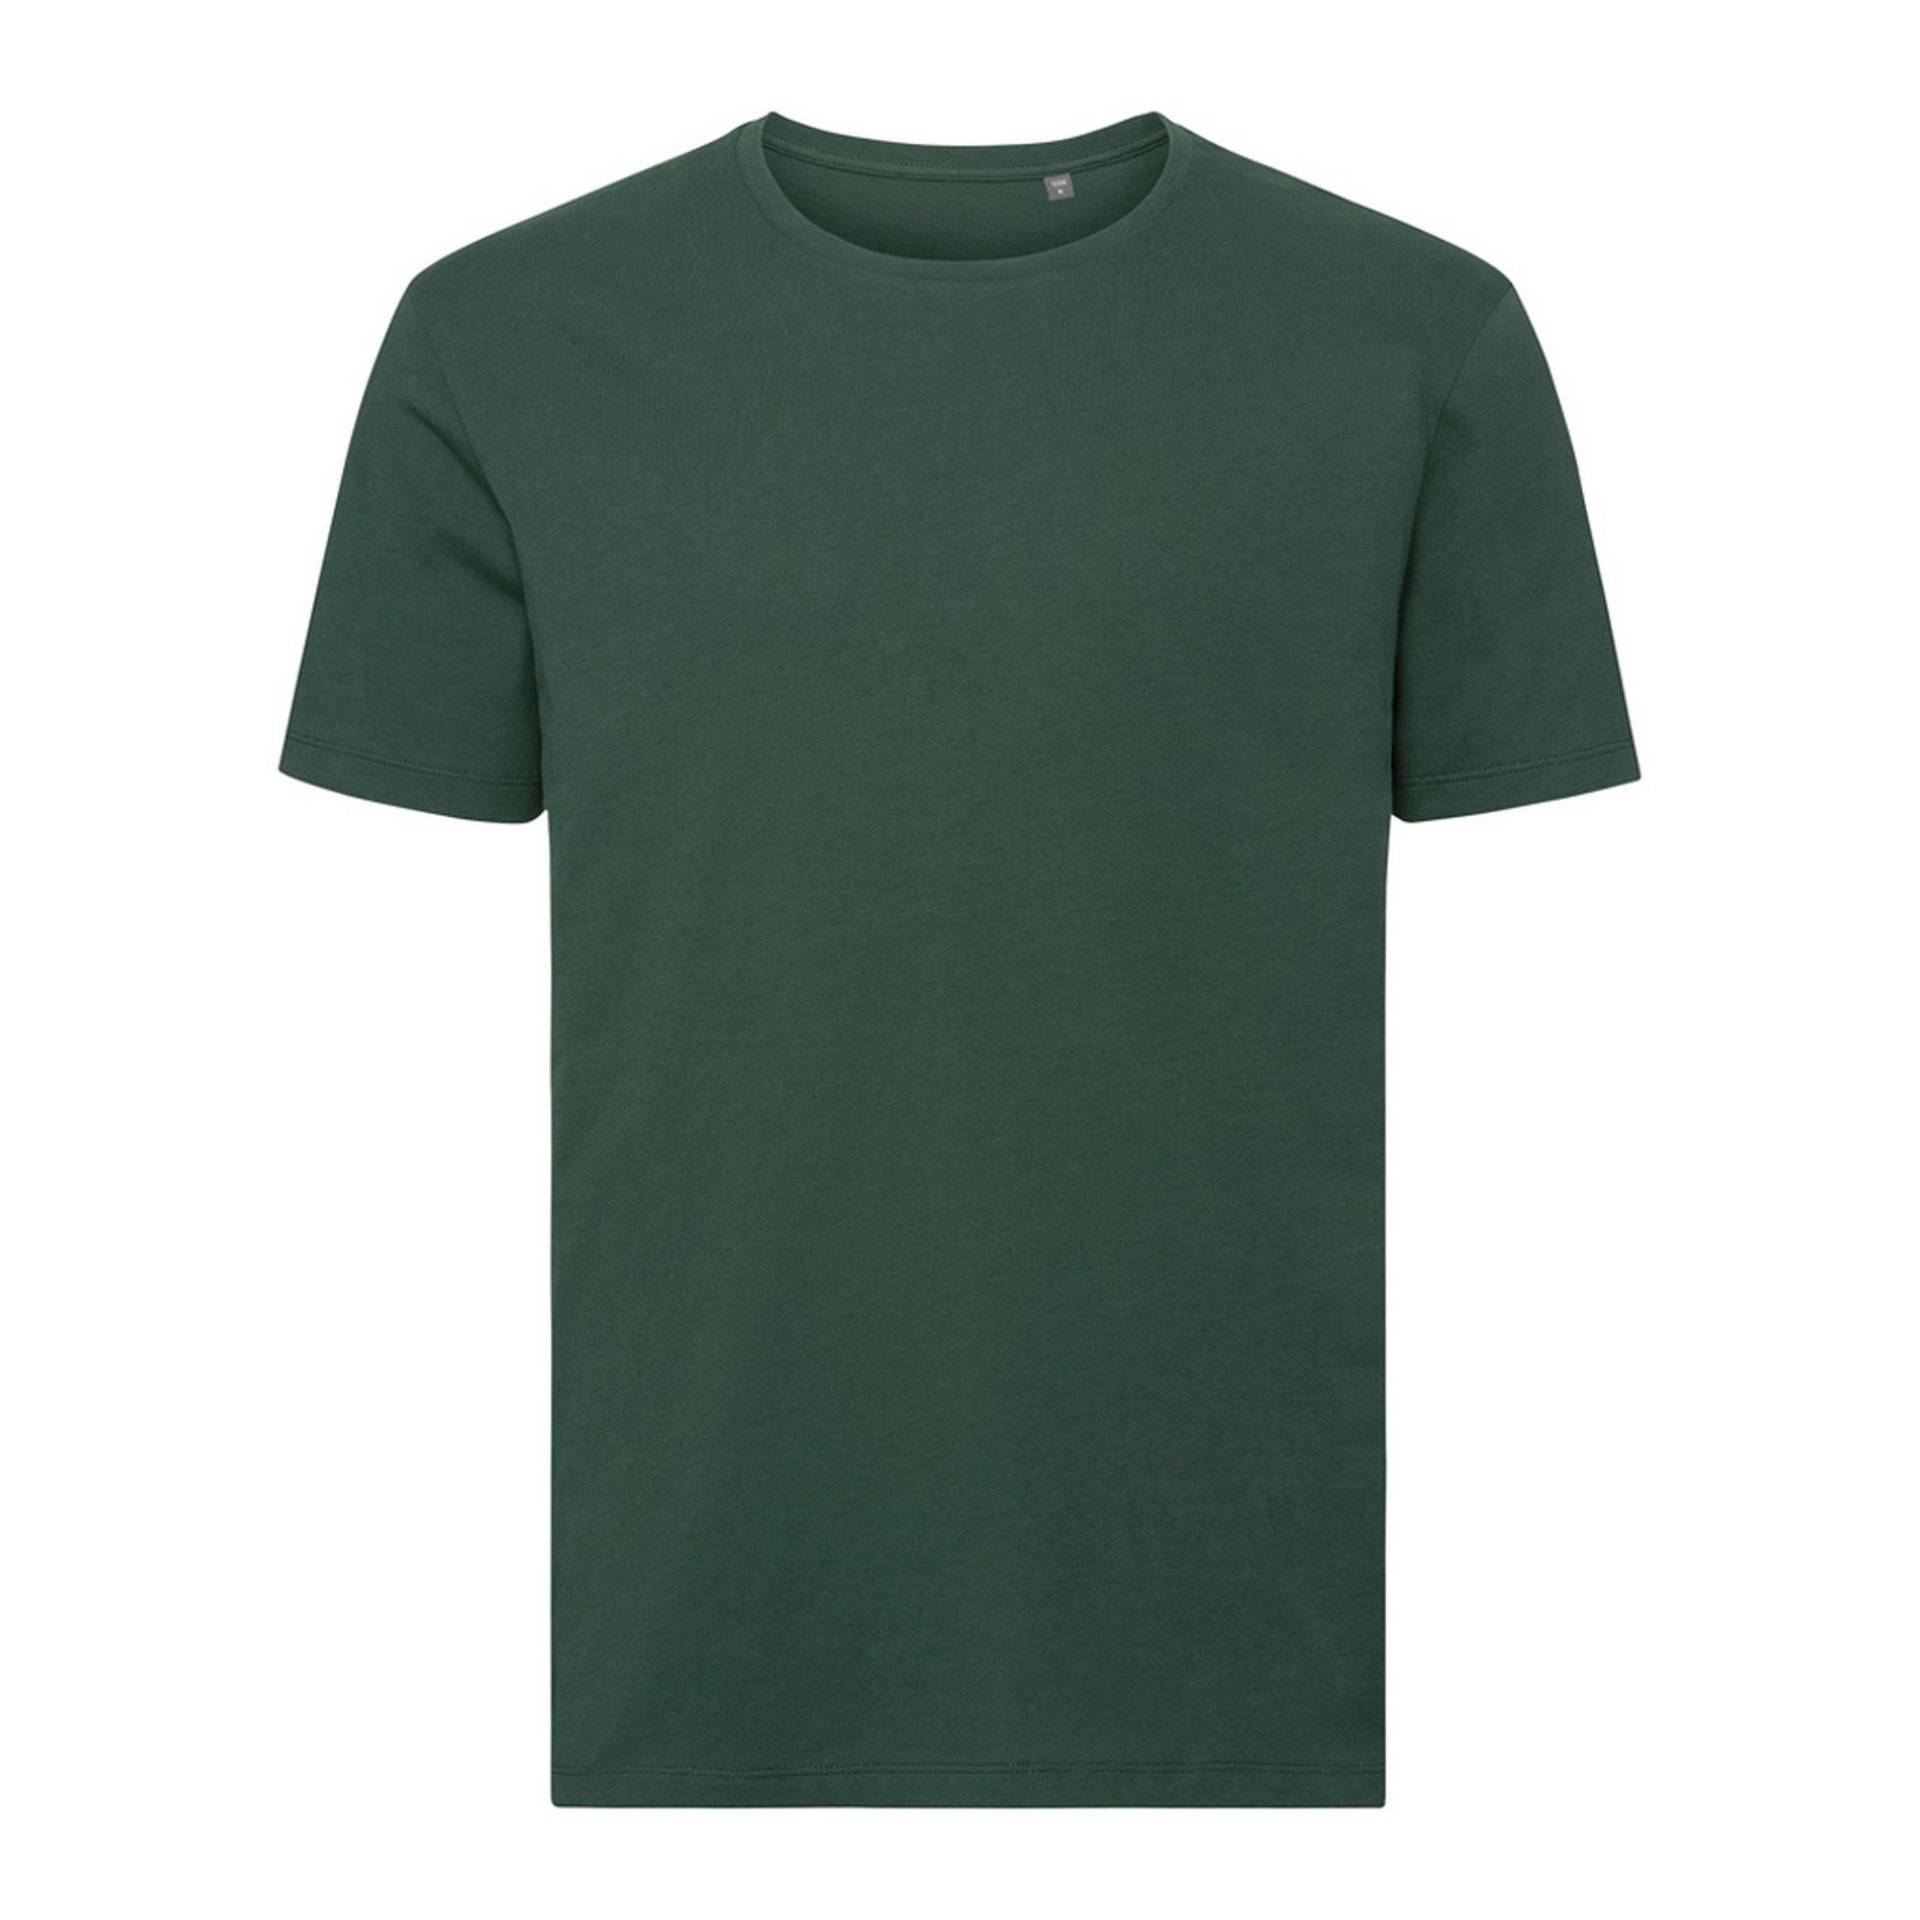 Authentic Pure Organik Tshirt Herren Grün XL von Russell